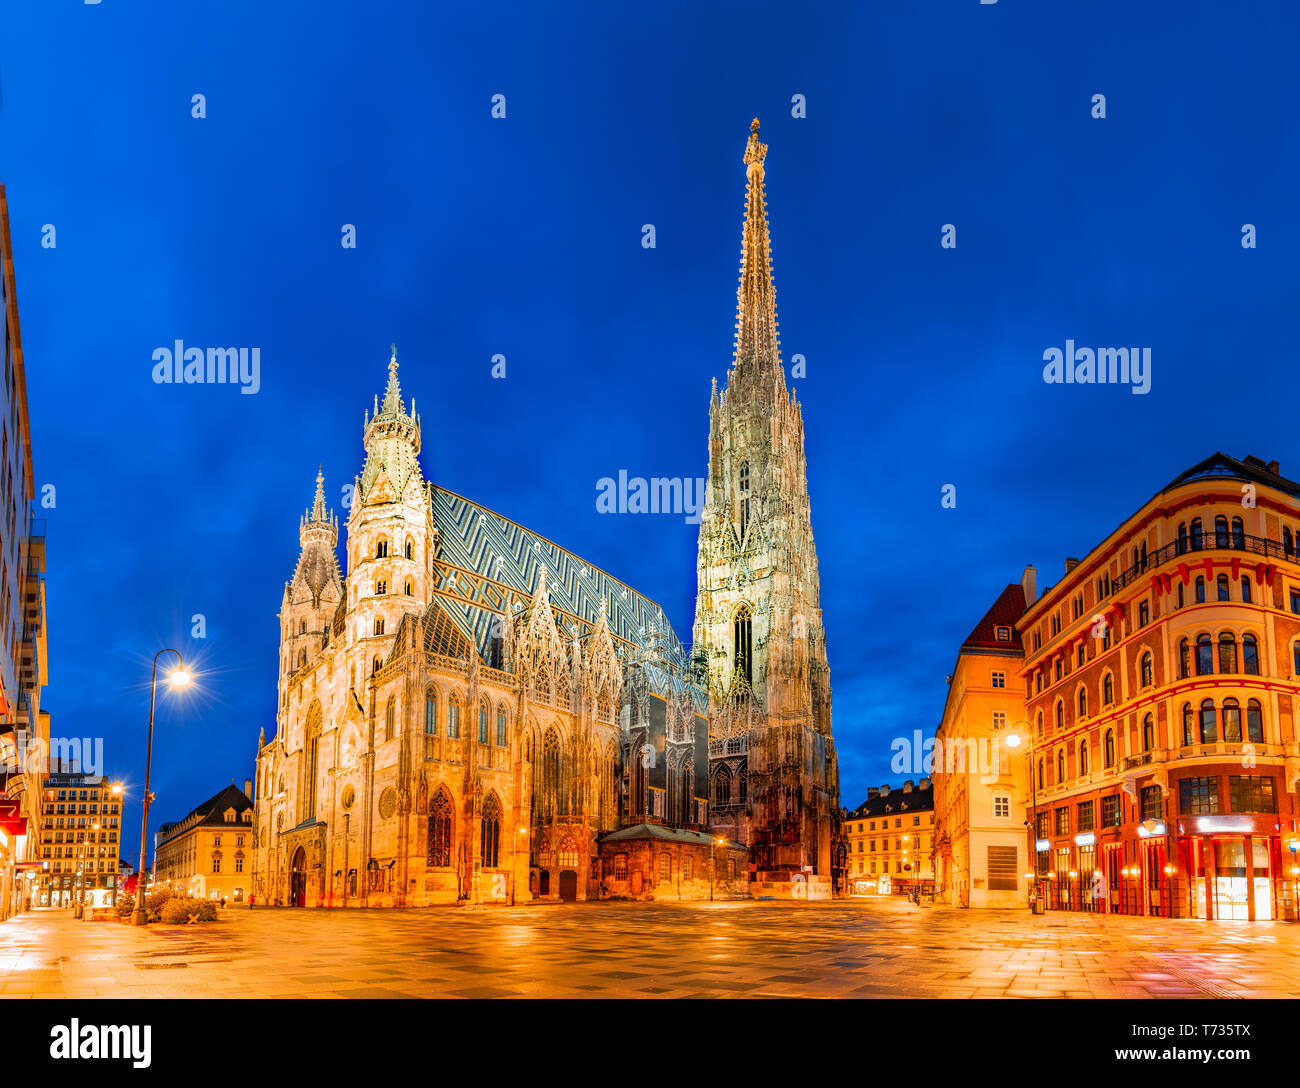 Vienne, Autriche, Europe : la cathédrale Saint-Étienne ou Stephansdom, Stephansplatz tôt le matin. Banque D'Images